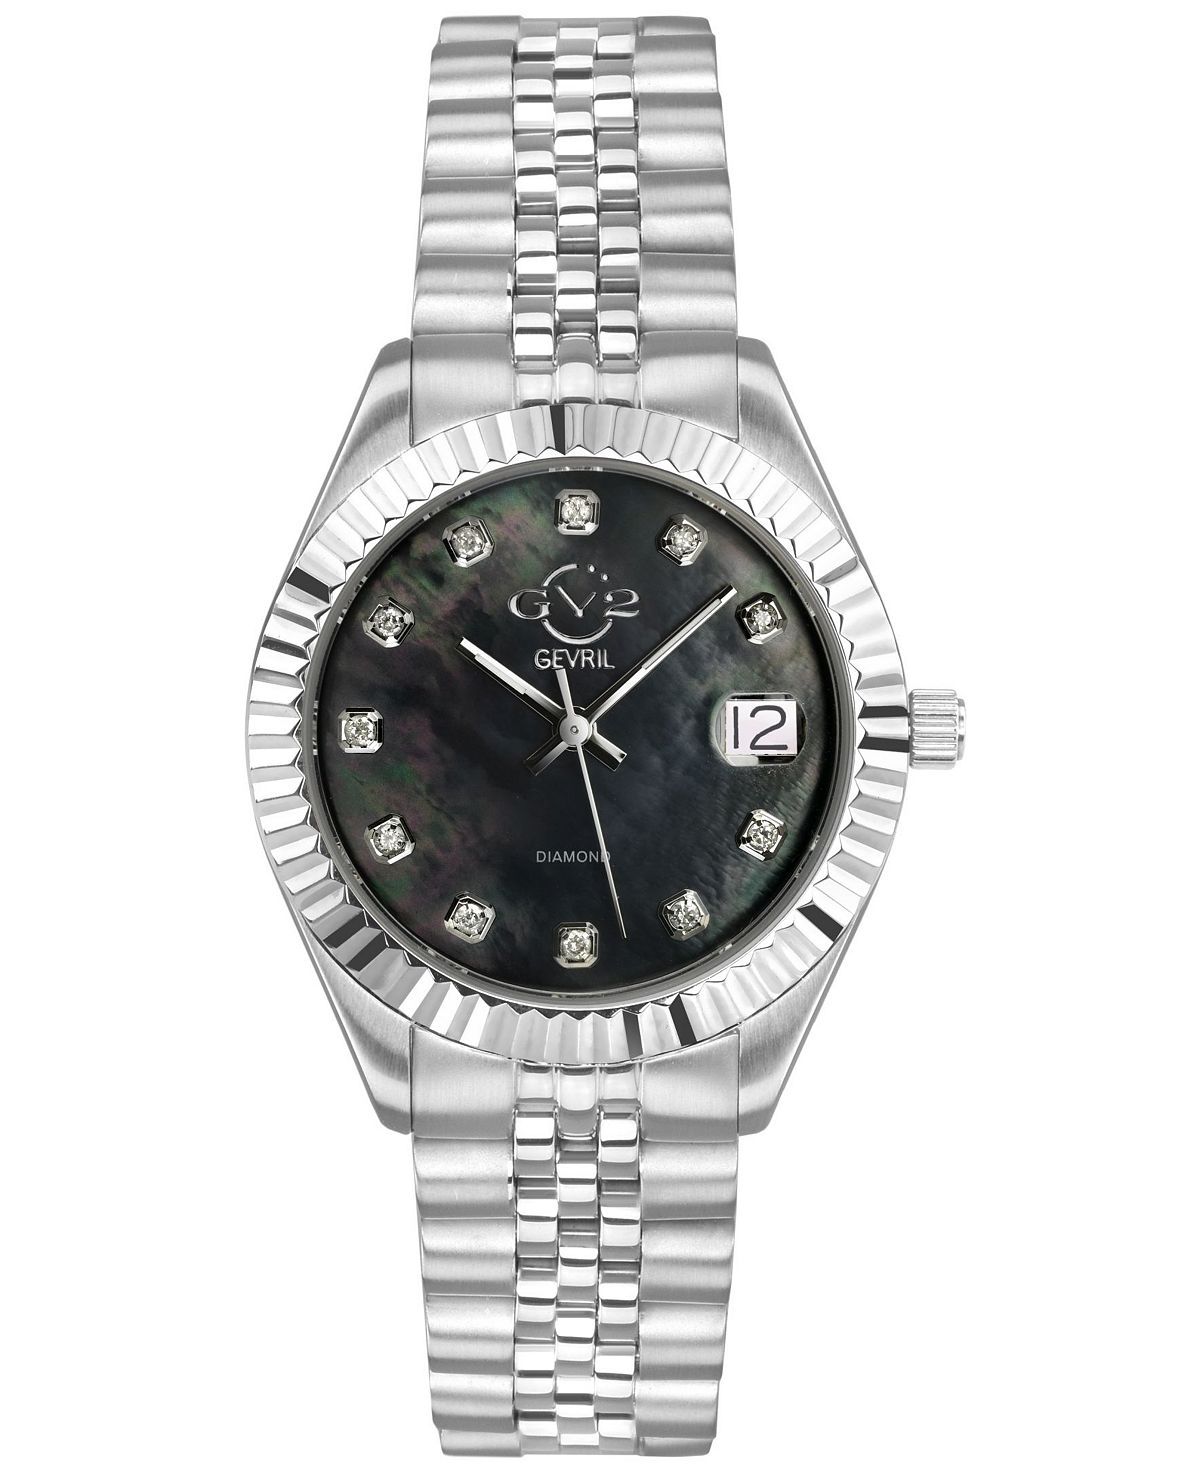 GV2 Женские часы Неаполь серебристого цвета из нержавеющей стали, швейцарские кварцевые часы-браслет, 34 мм Gevril женские двустрелочные часы из нержавеющей стали серебристого цвета 34 мм tommy hilfiger